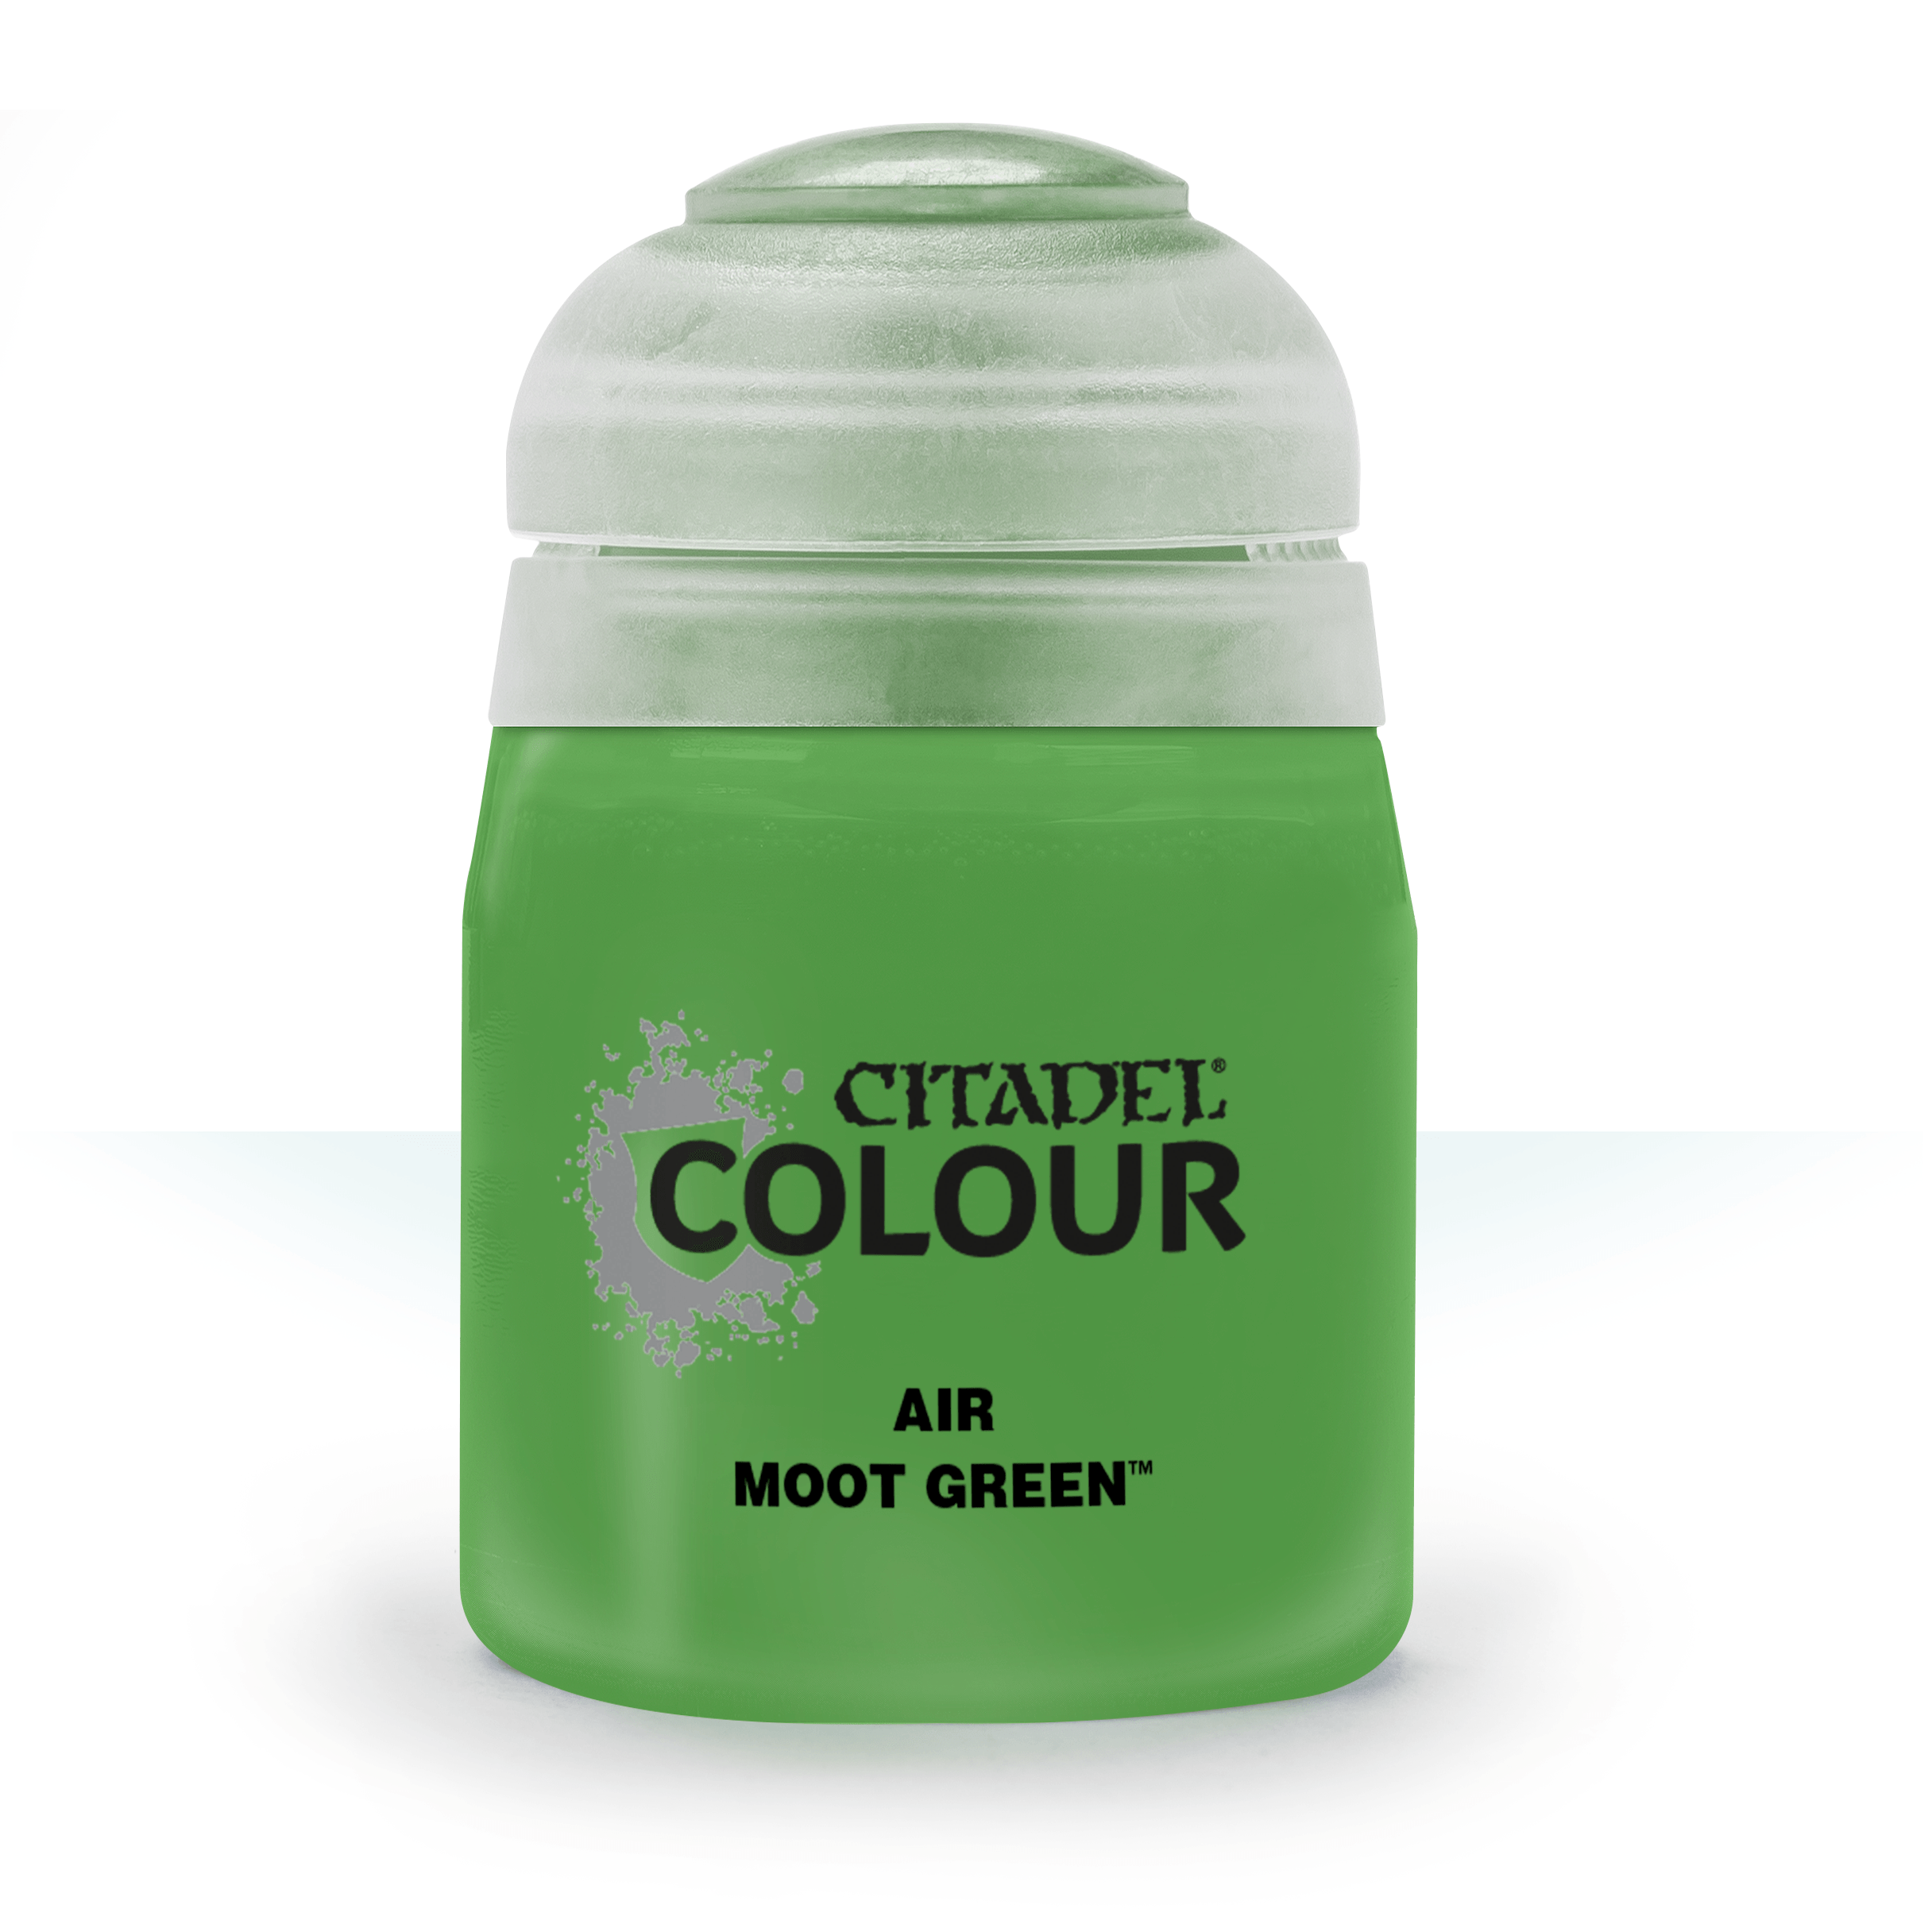 Moot Green - Citadel Air Colour